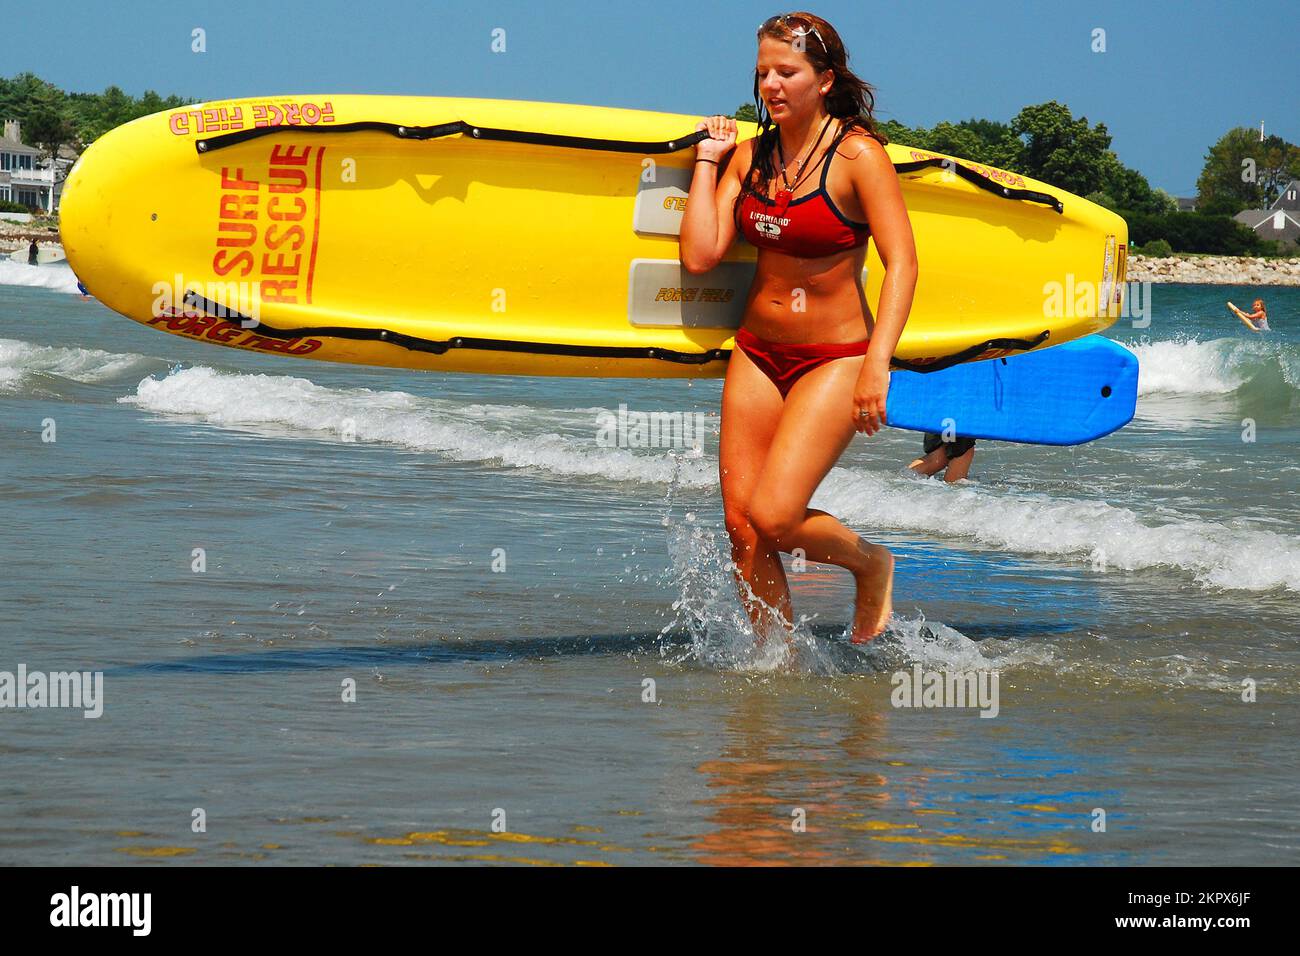 Una socorrista femenina regresa a la costa llevando una balsa que salva la vida al final de sus ejercicios de entrenamiento como parte de su trabajo de verano Foto de stock